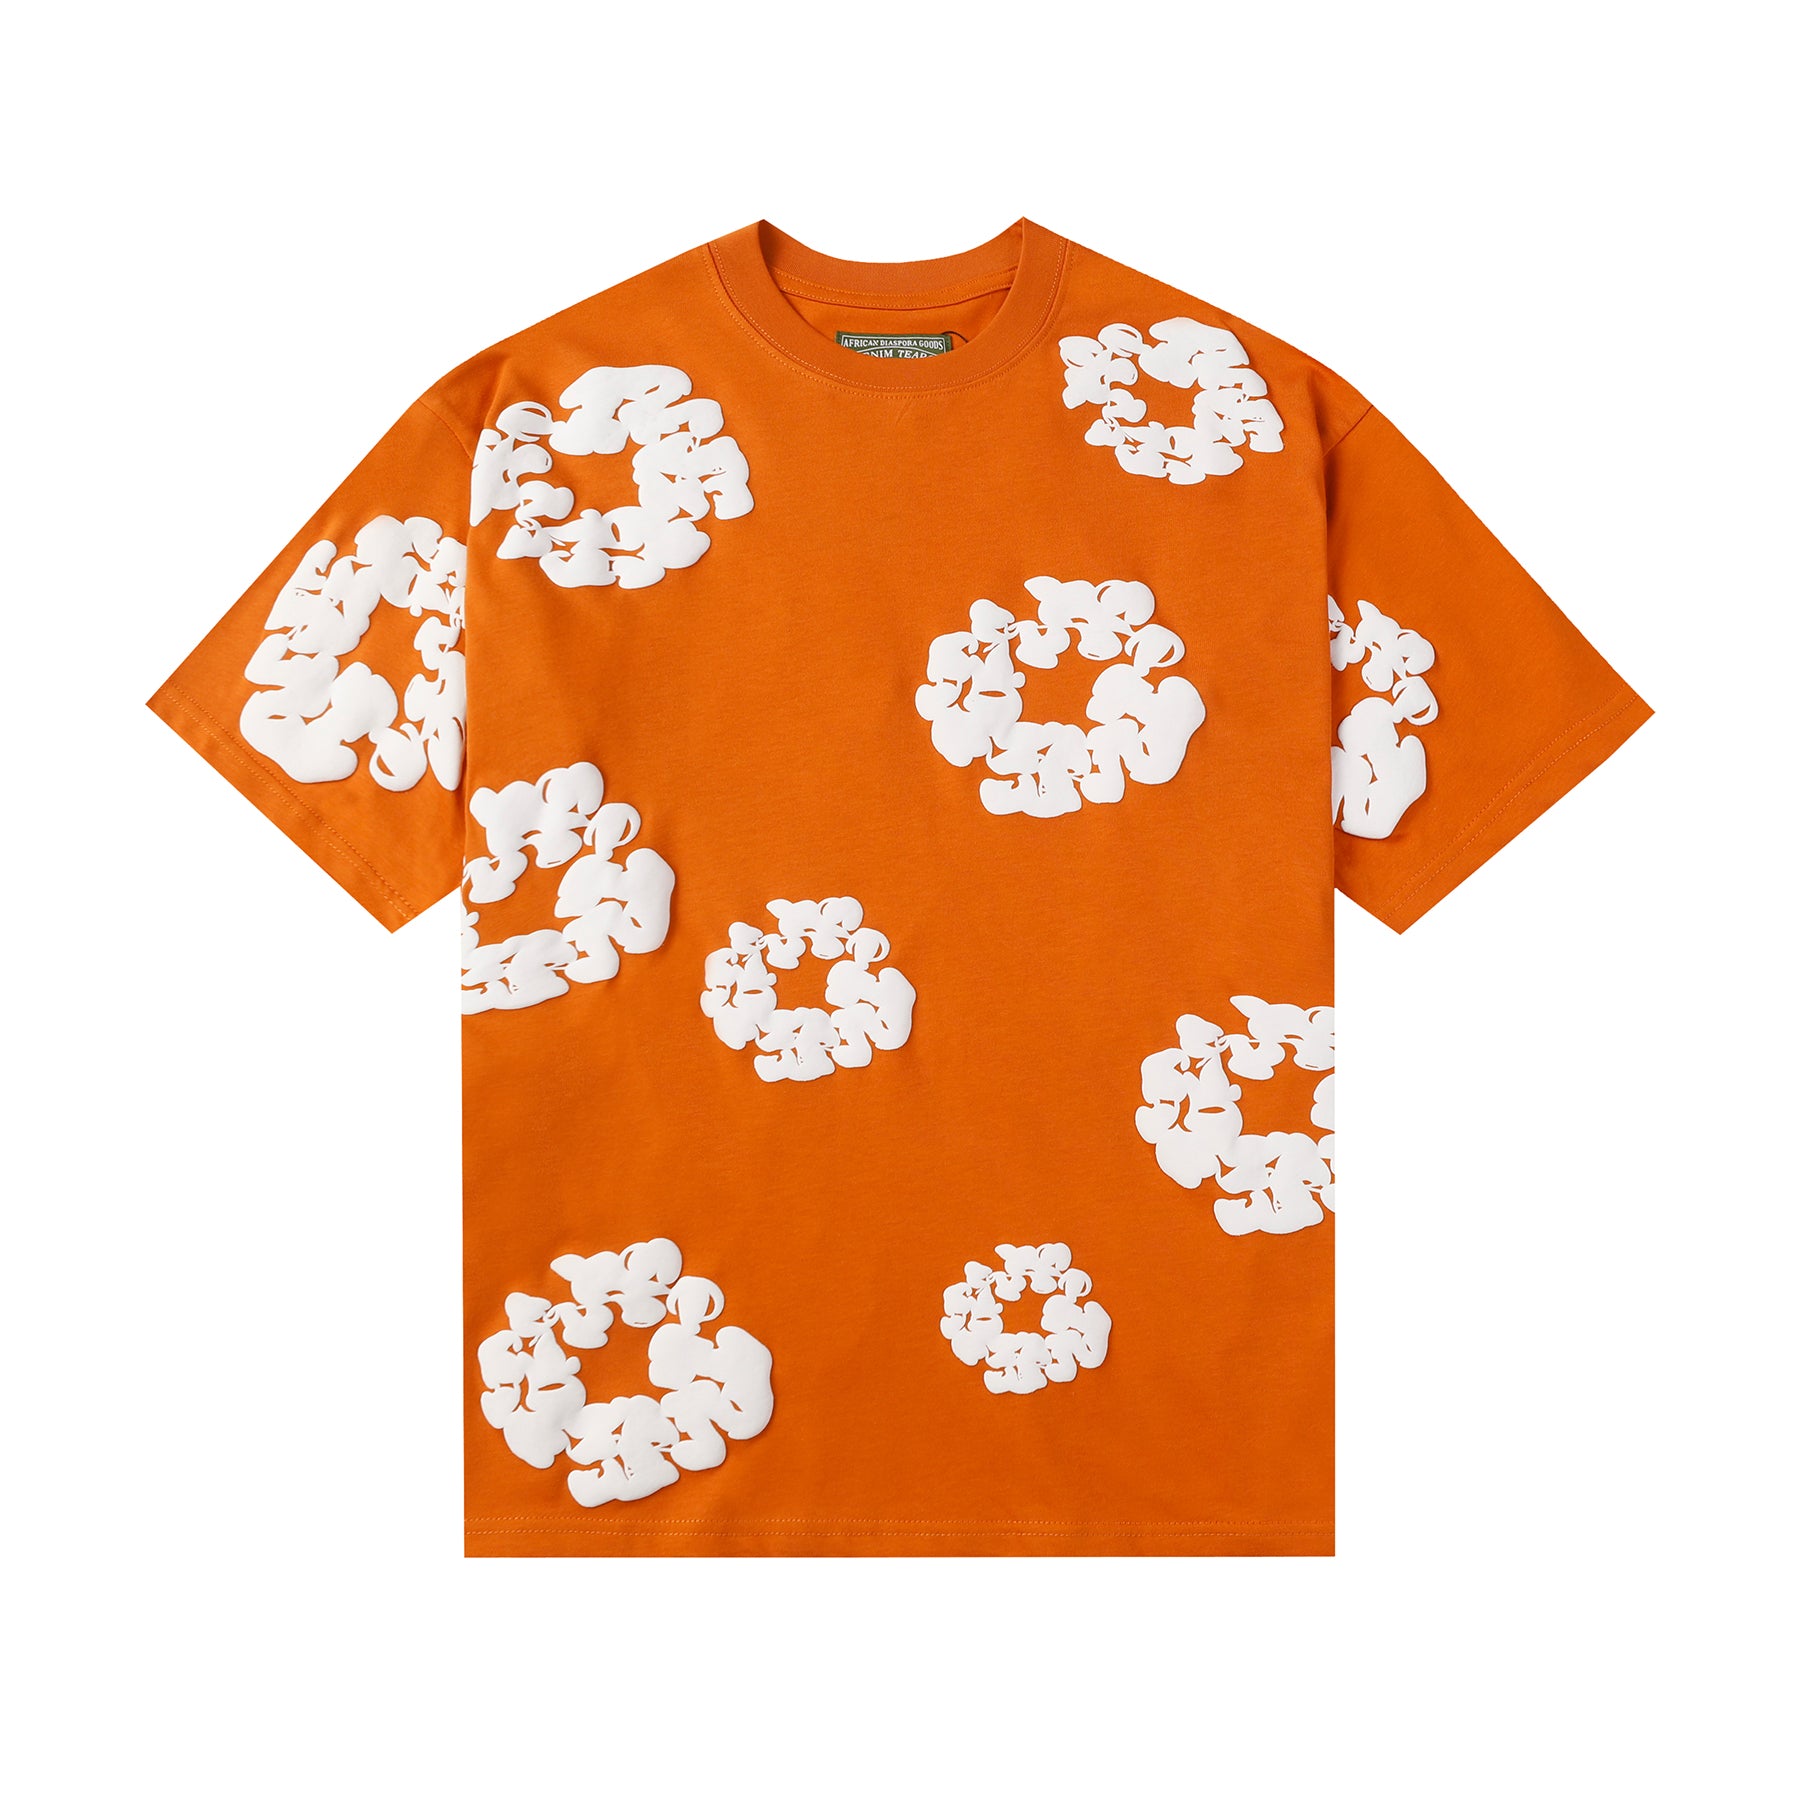 Denim Tears "Orange" T-Shirt